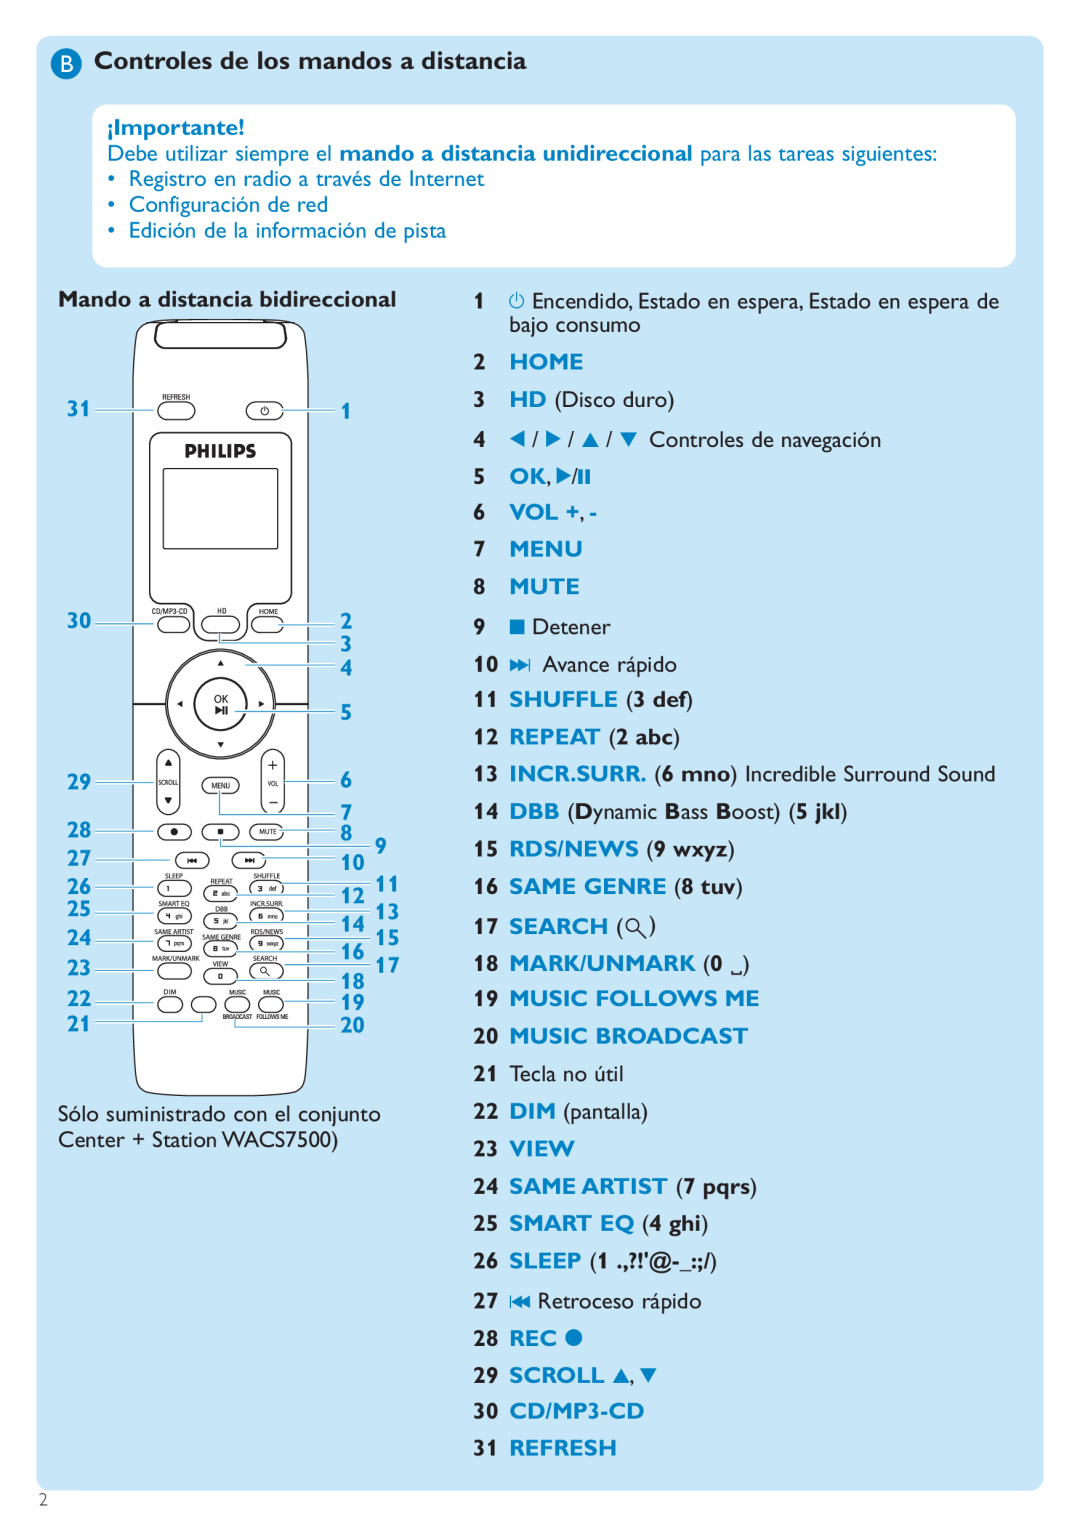 Philips WACS7500 manual BControles de los mandos a distancia, Mando a distancia bidireccional, 26SLEEP 1 .,?!@ 